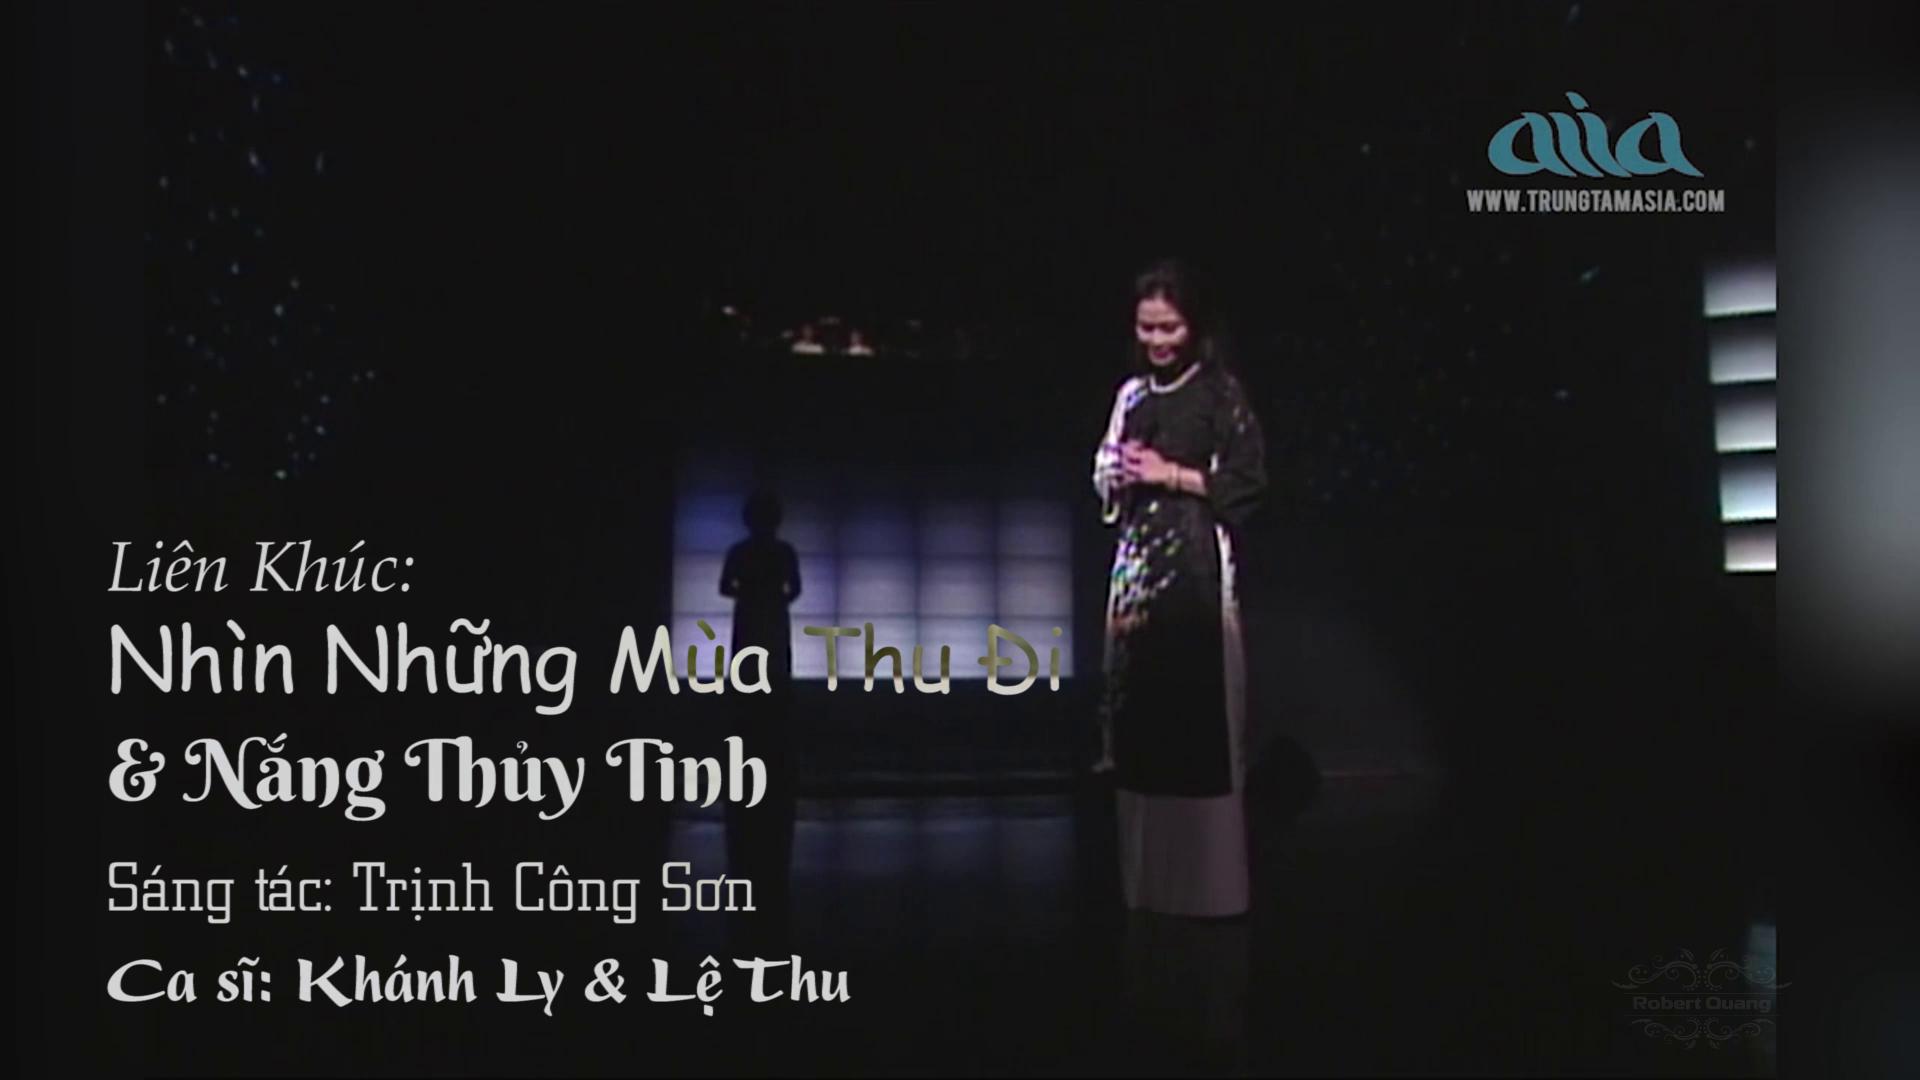 2-LK Nhin Nhung Mua Thu Di & Nang Thuy Tinh - Khanh Ly & Le Thu.jpeg